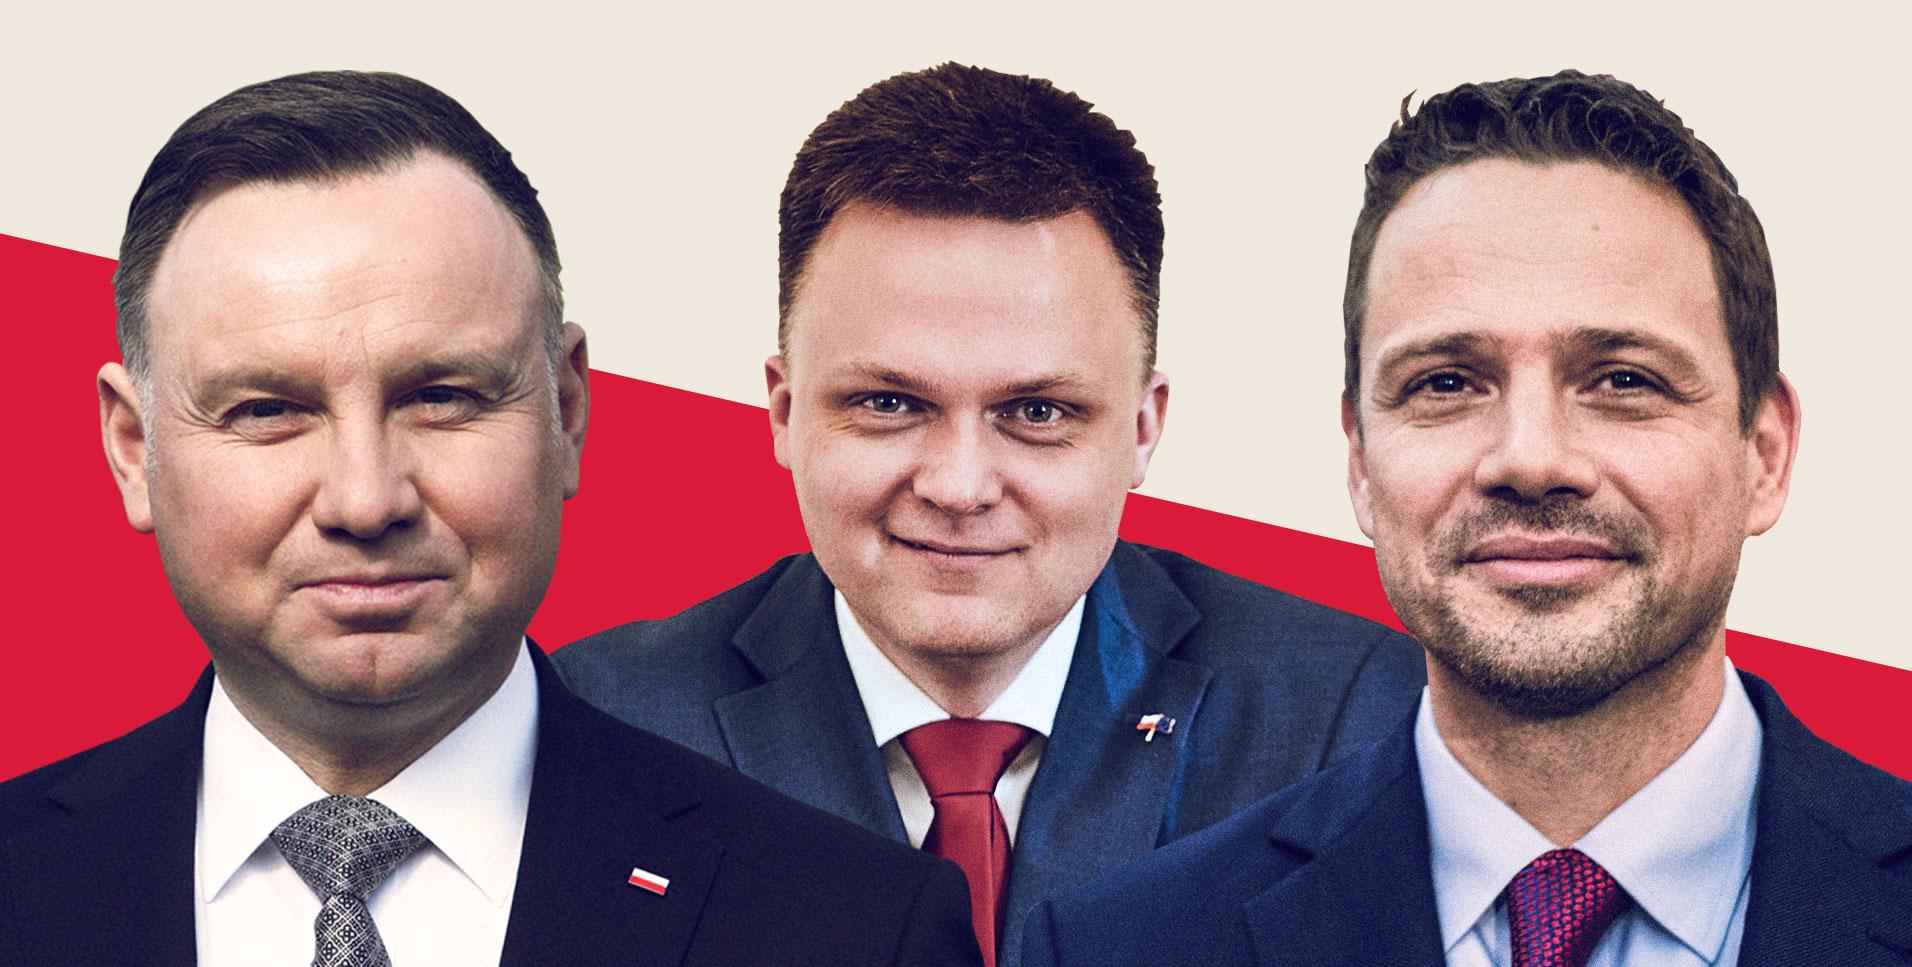 Andrzej Duda, Szymon Hołownia, Rafał Trzaskowski - sondaż OKO.press analizuje ich szanse na wygraną